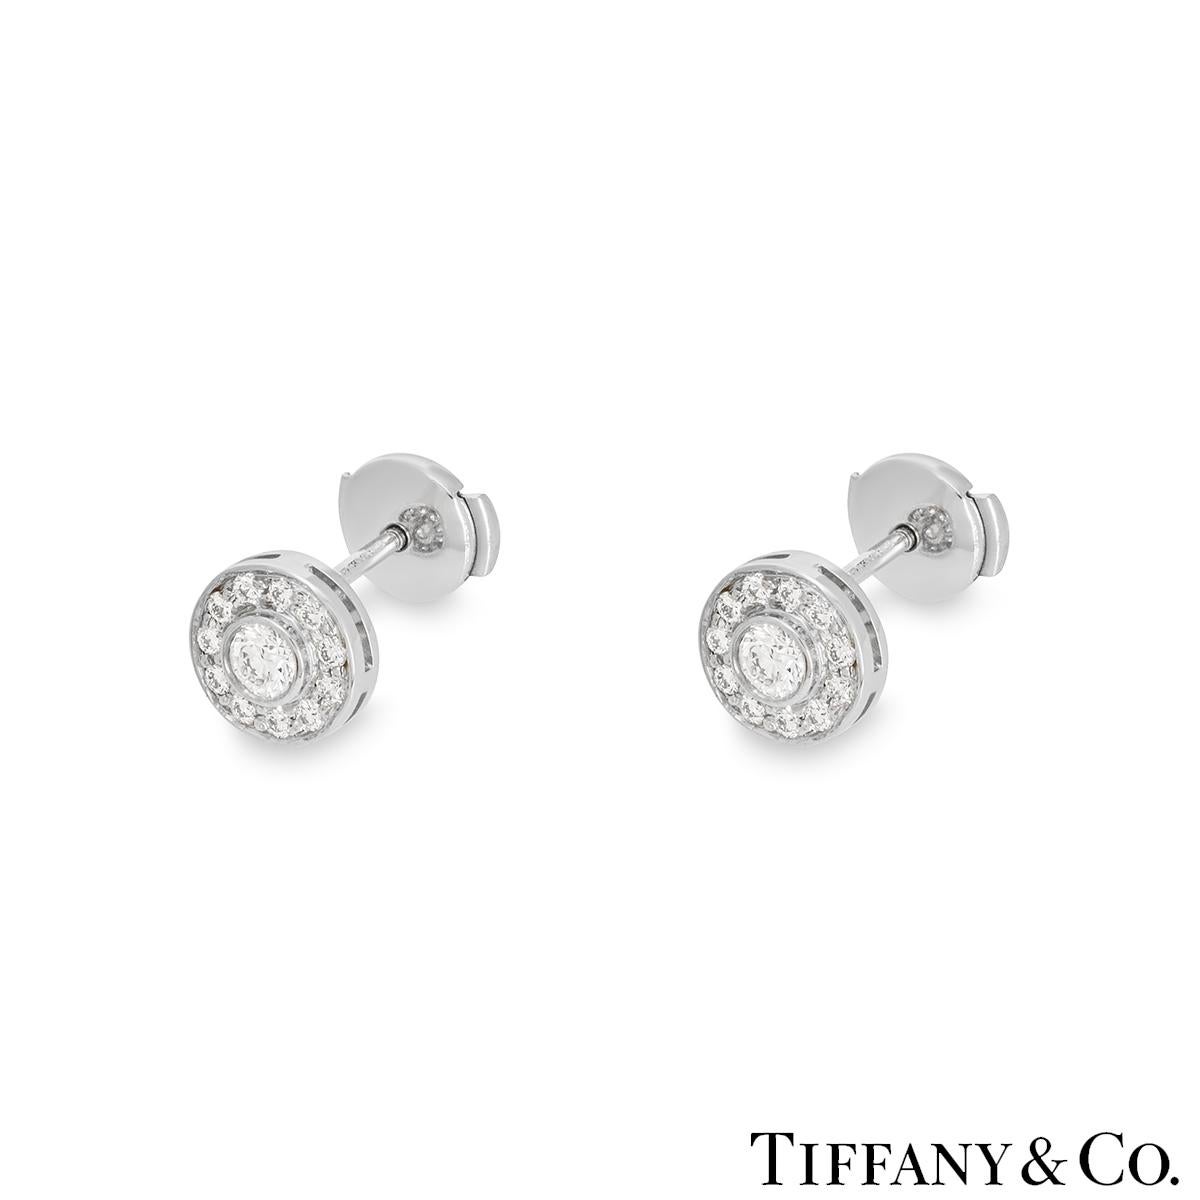 Une belle paire de boucles d'oreilles en platine et diamants de Tiffany & Co. de la collection Circlet. Chaque boucle d'oreille présente un diamant rond de taille brillant serti au centre, d'un poids total approximatif de 0,30ct, de couleur